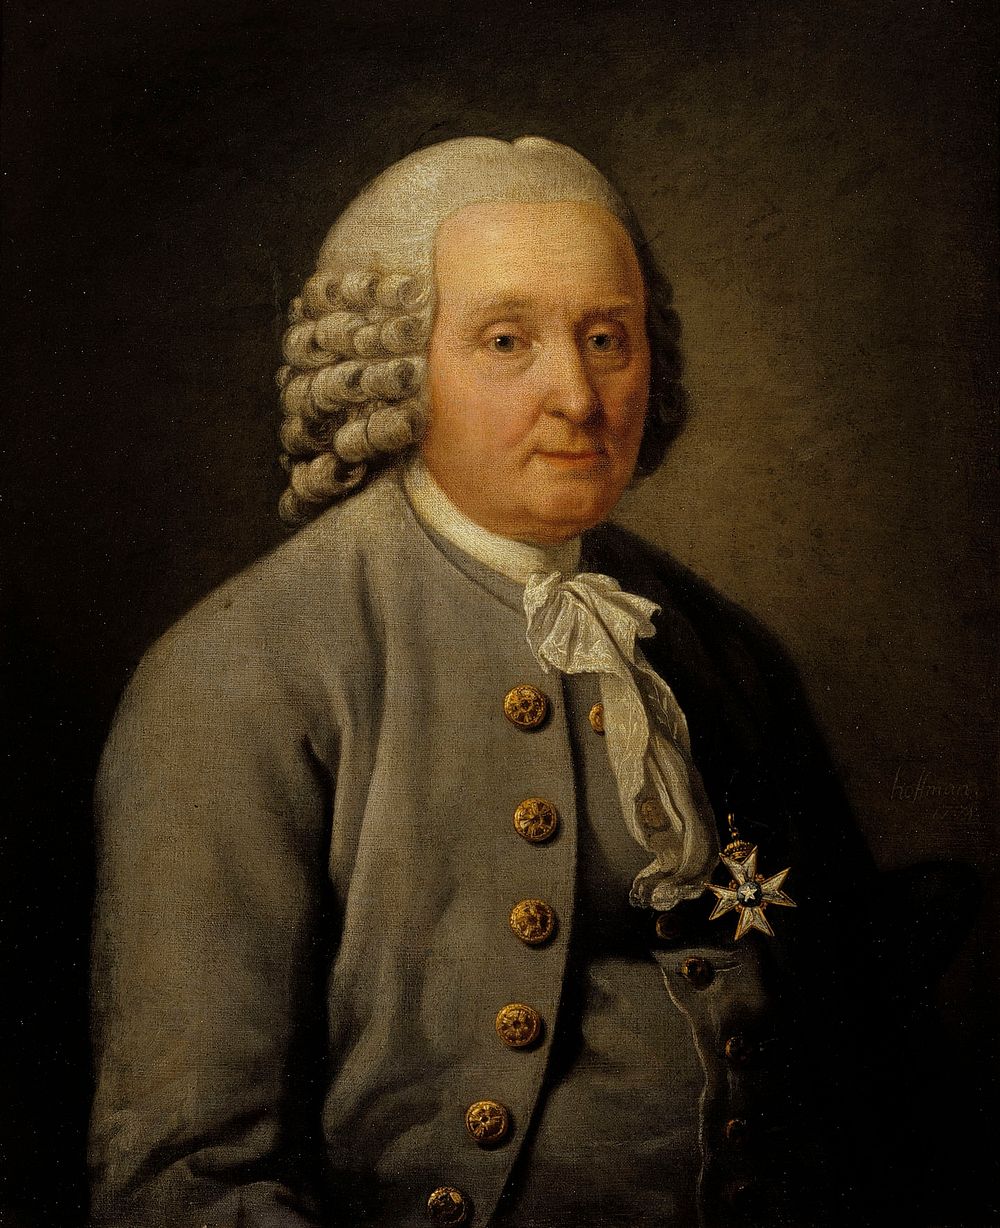 Mayor jonas robeck, 1777